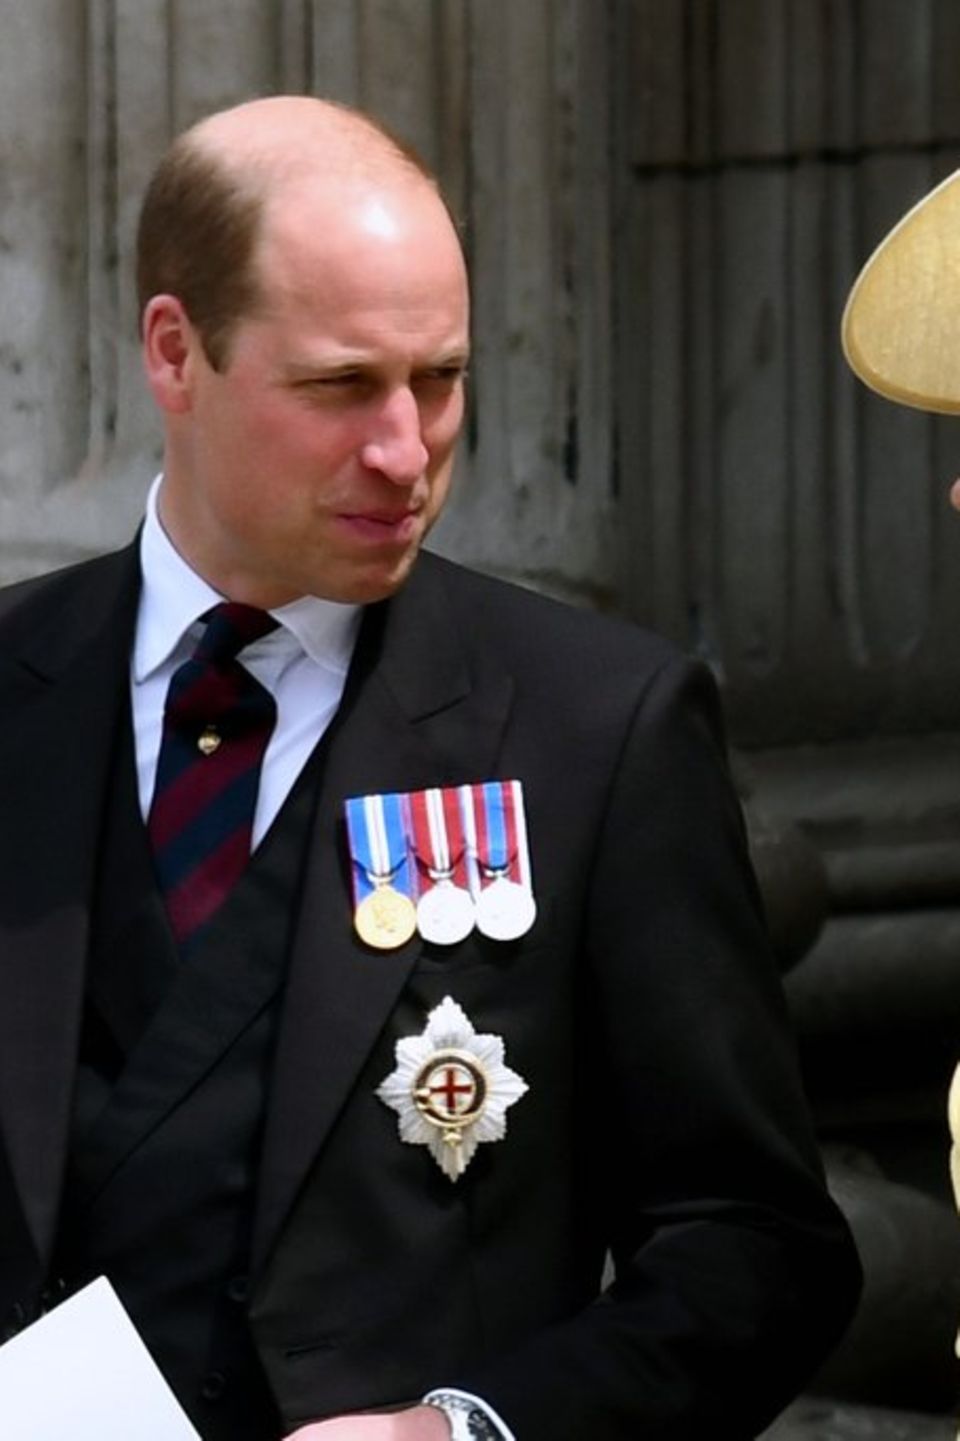 William und Kate galten bislang als Hoffnungs- und Sympathieträger der britischen Monarchie. Doch nun gerät ihr Image ins Wank